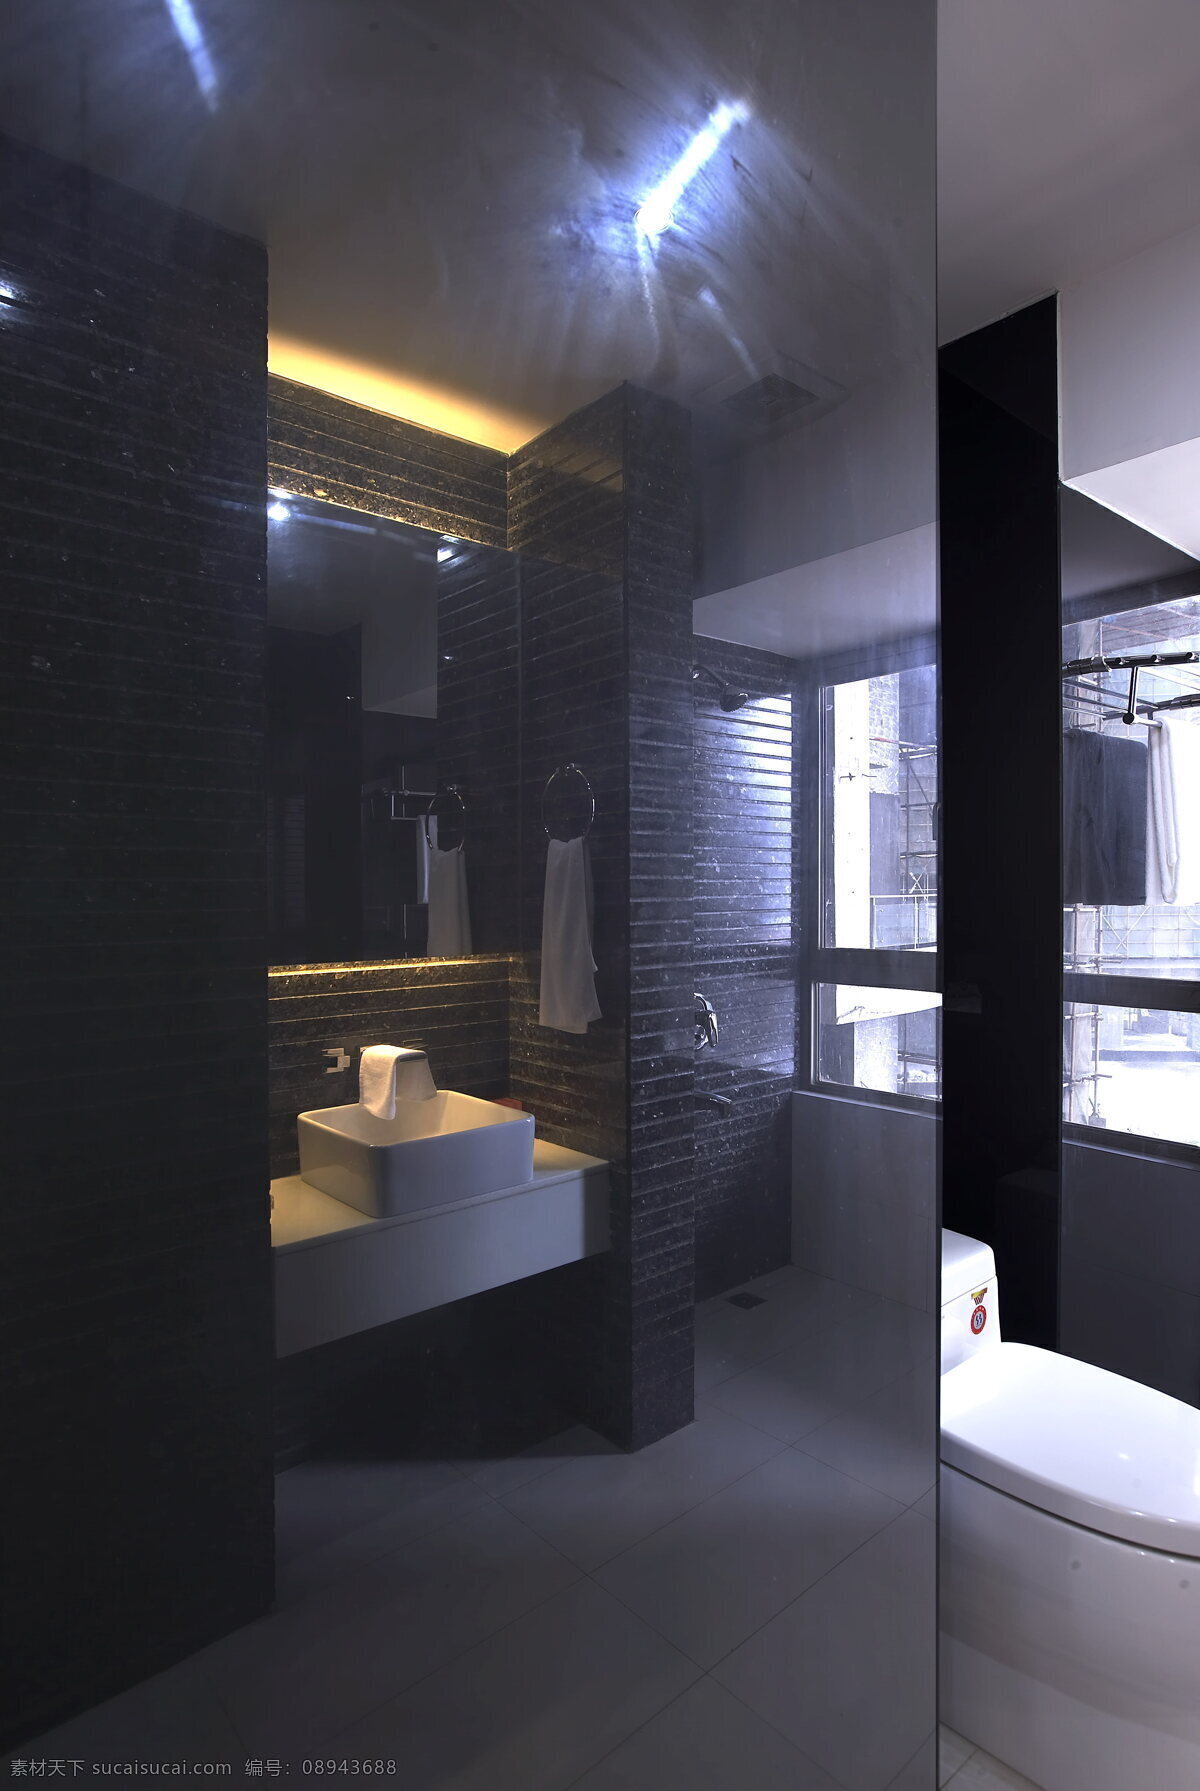 wsj 卫生间 效果图 a 室内设计 现代简约 洗手间 厕所 黑色